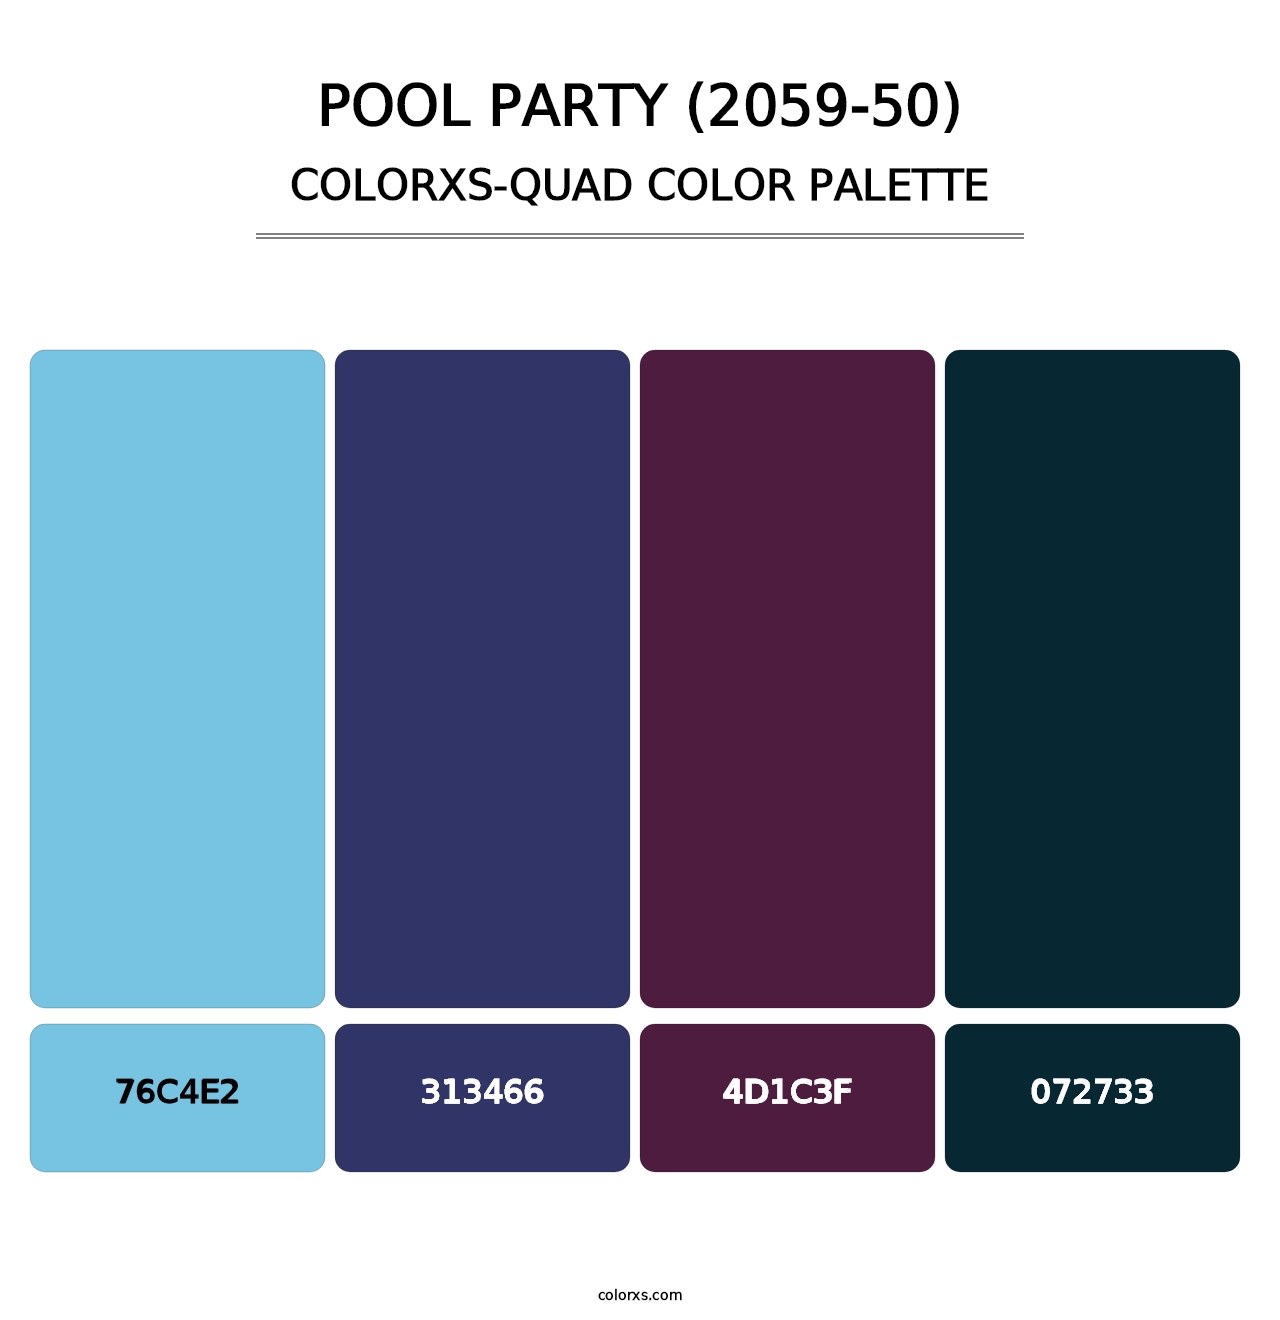 Pool Party (2059-50) - Colorxs Quad Palette